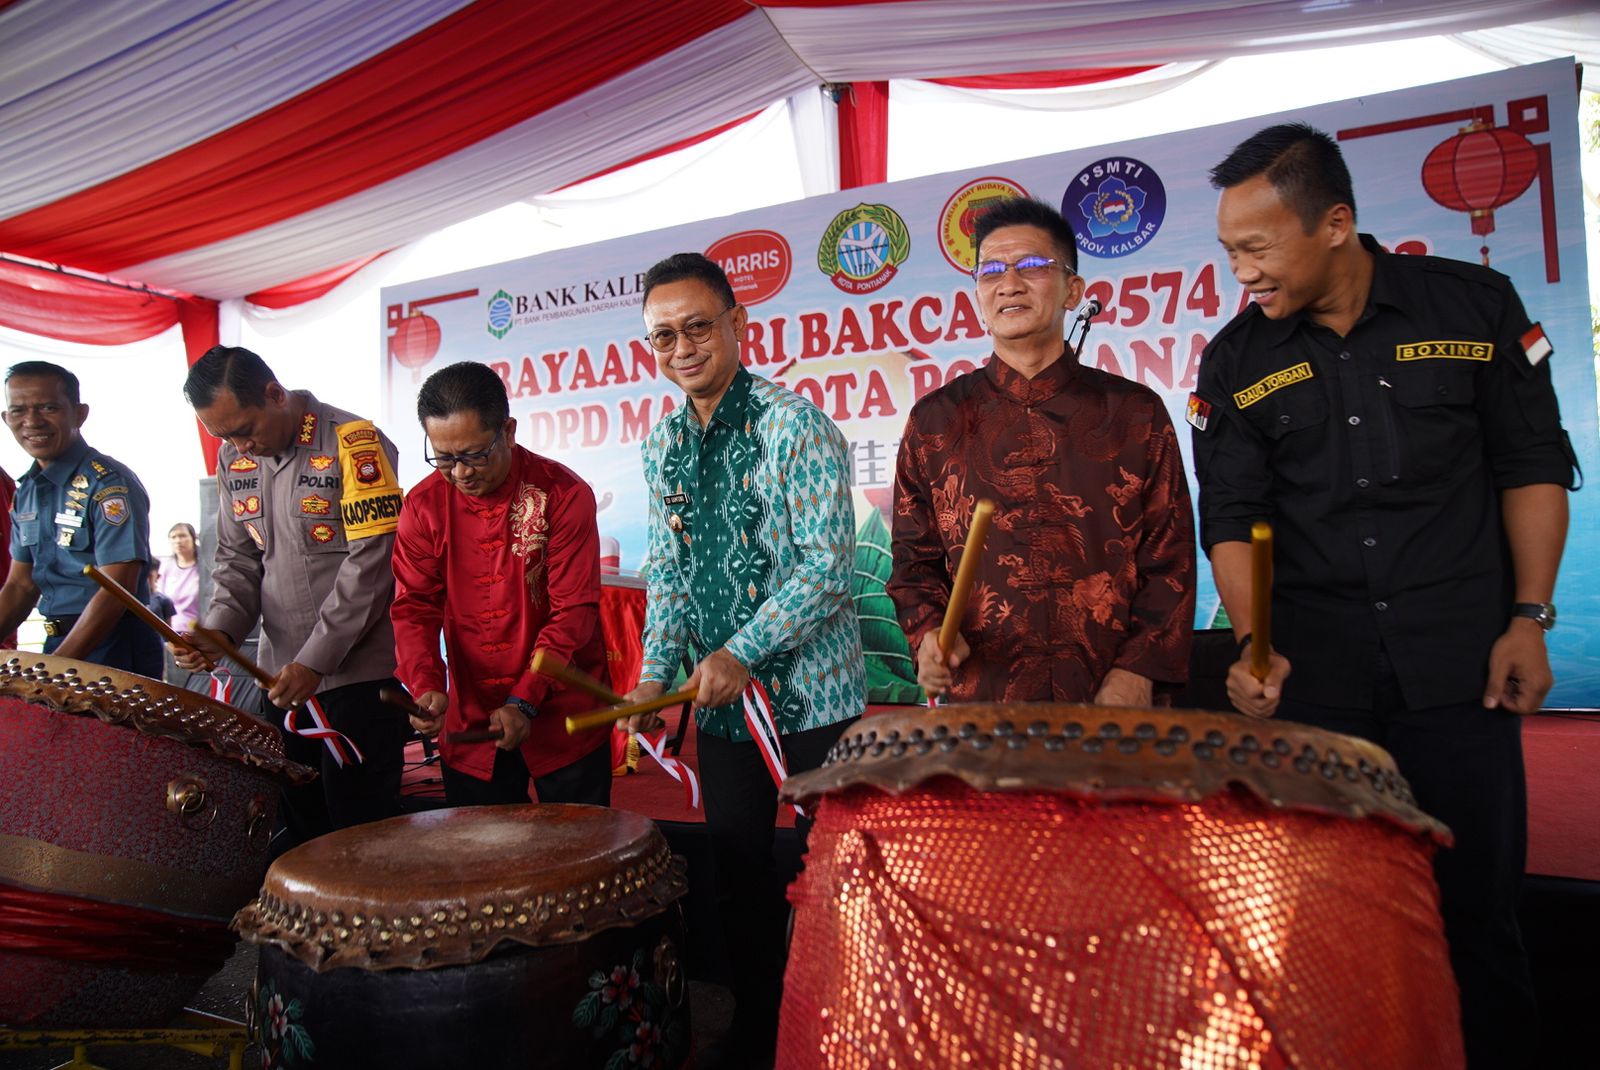 Pembukaan perayaan Hari Bakcang digelar oleh Majelis Adat Budaya Tionghoa (MABT) Kota Pontianak di atas kapal wisata tepian Sungai Kapuas, Kamis (22/06/2023). (Foto: Indri)